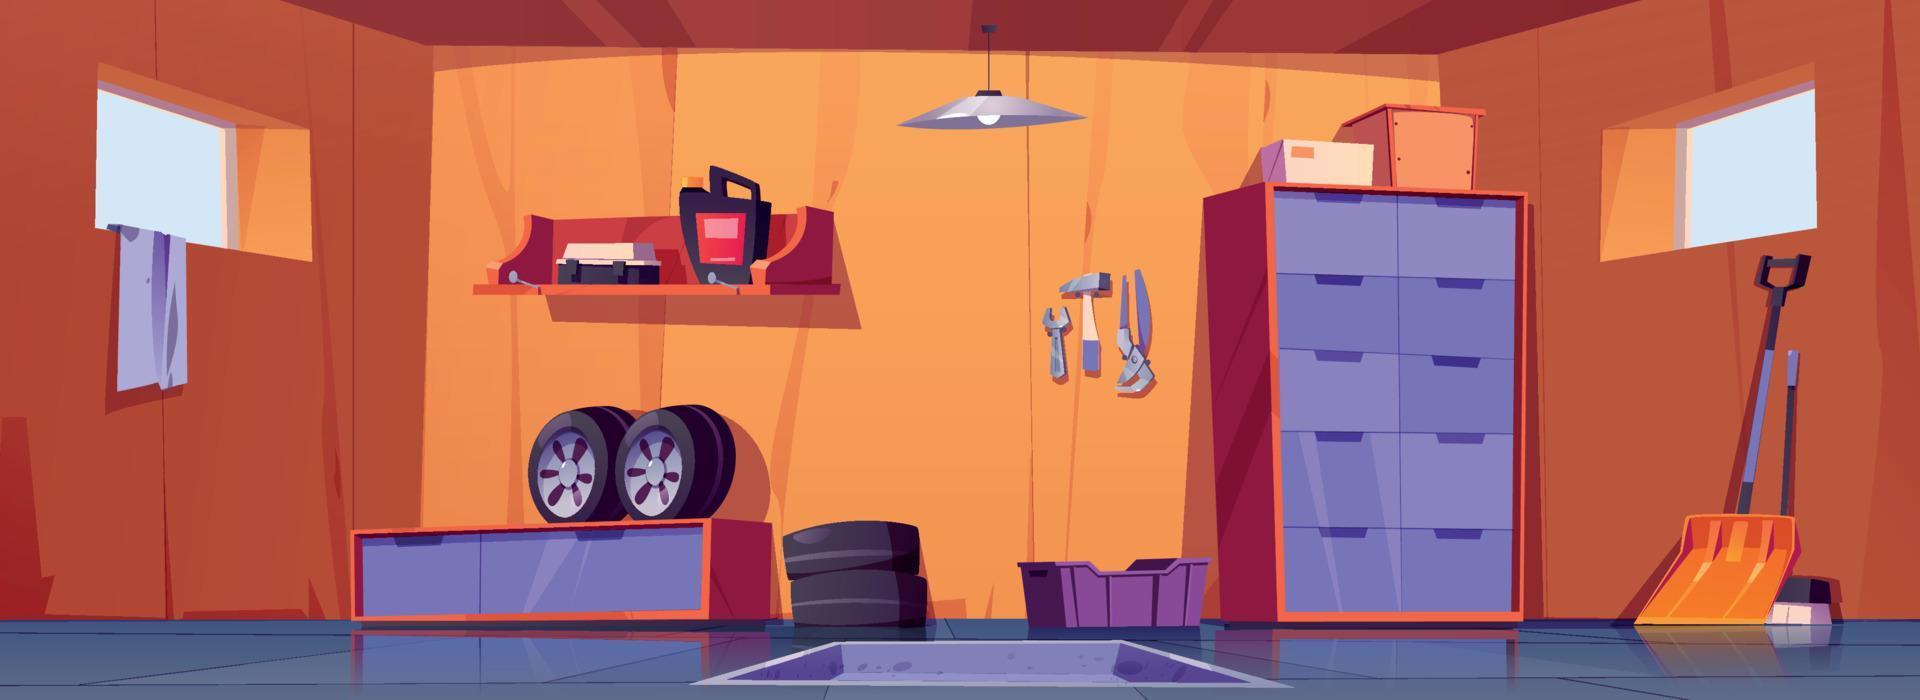 garage intérieur avec réparation outils et voiture pneus vecteur